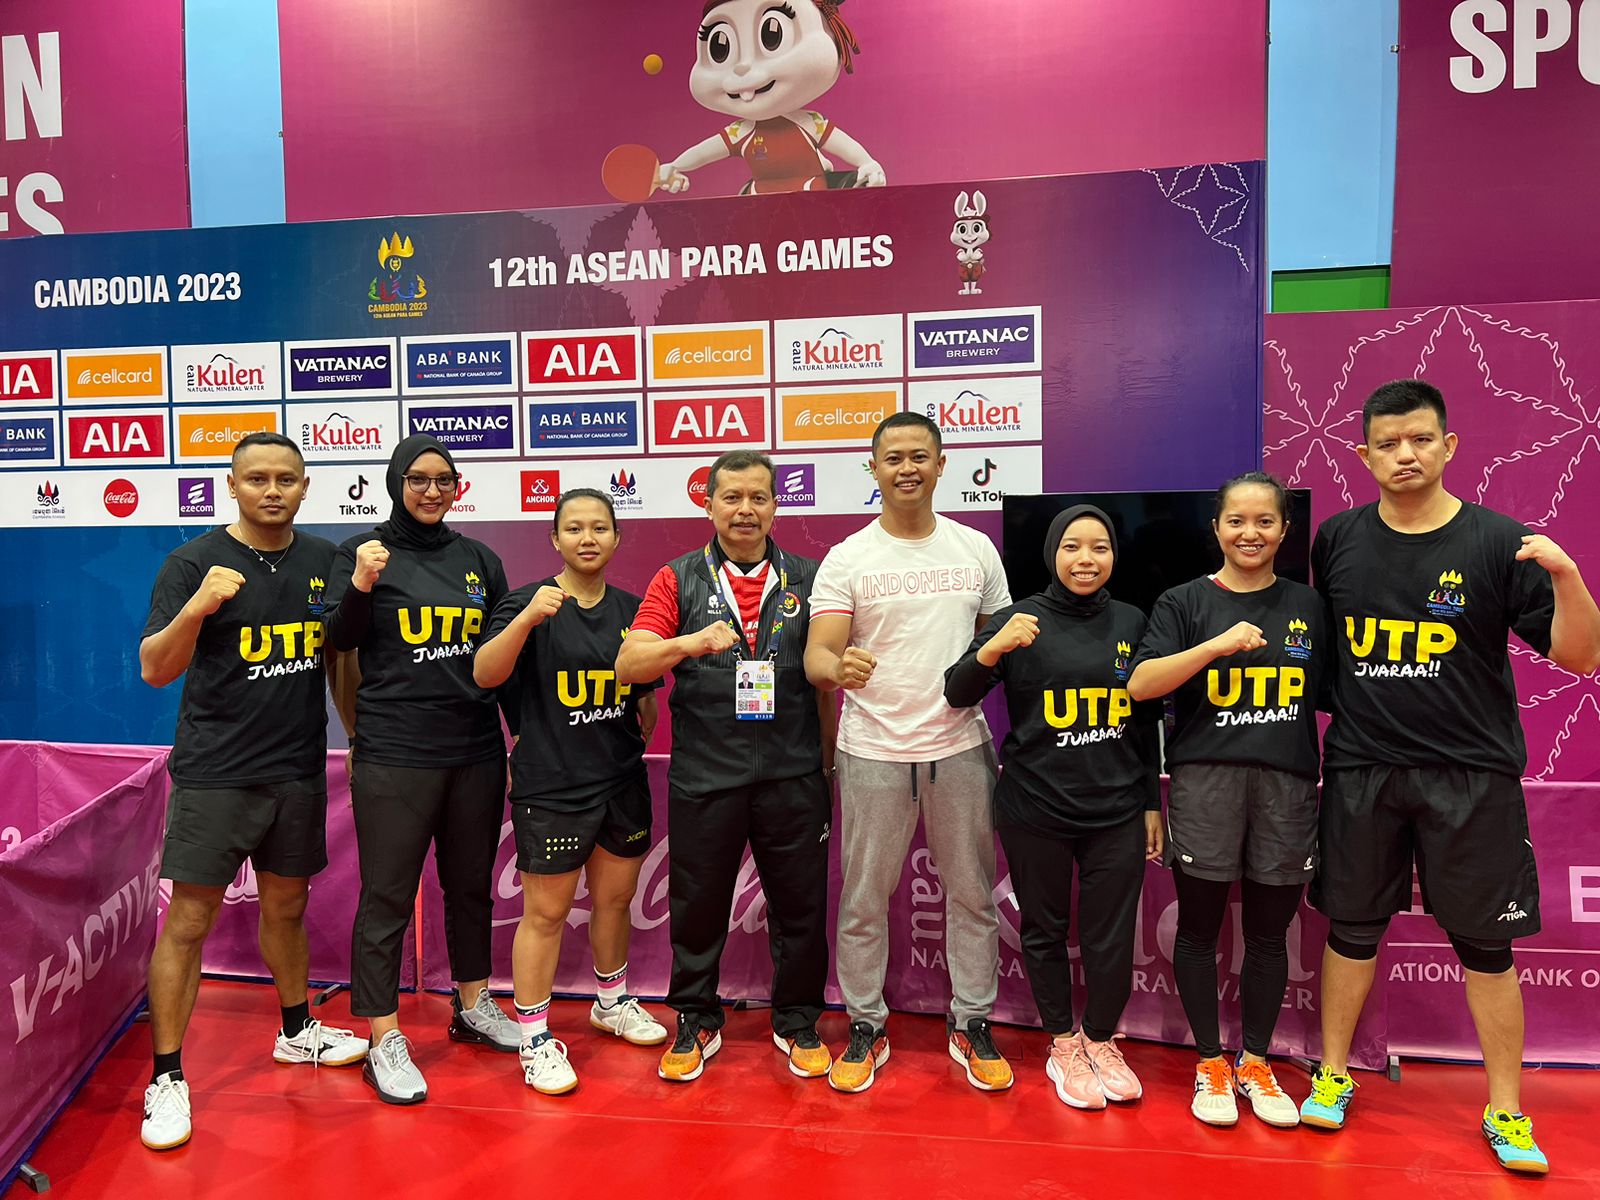 Sepuluh Atlet UTP Sumbang Medali di Ajang Asean Para Games XII 2023 di Kamboja